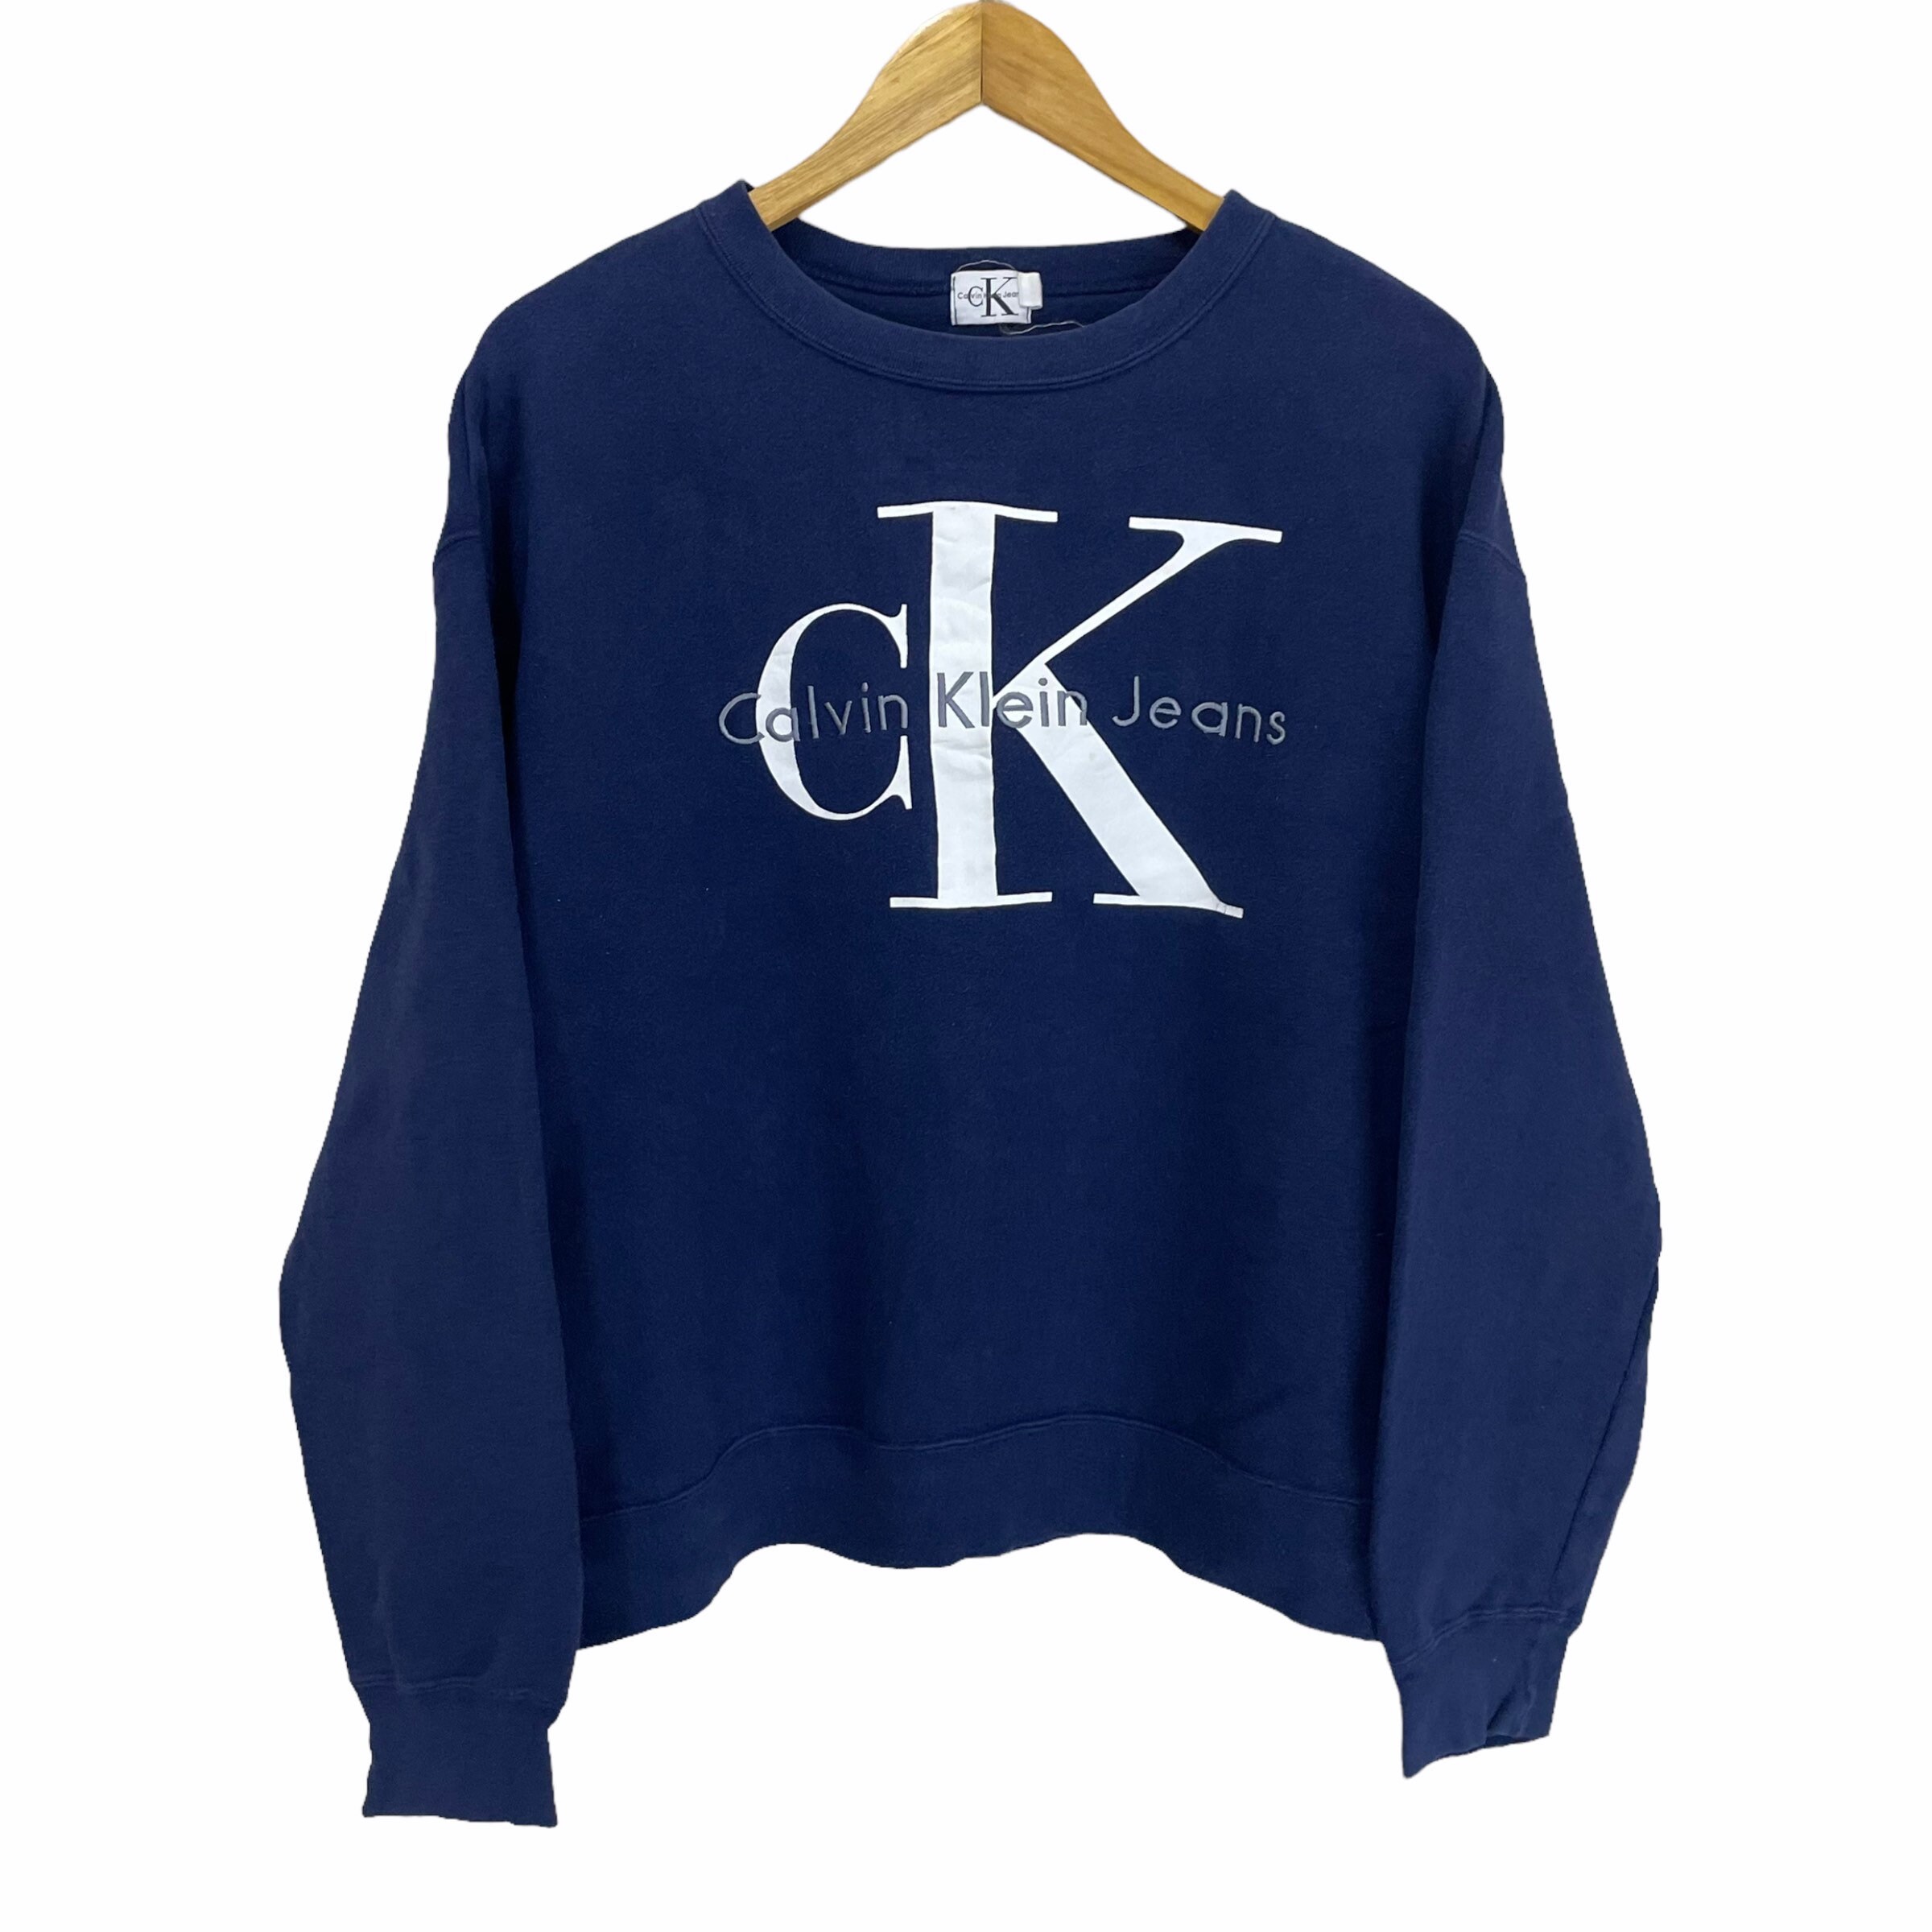 Praktisch Veraangenamen hybride PICK Vintage Designer Calvin Klein Sweatshirt Calvin Klein - Etsy